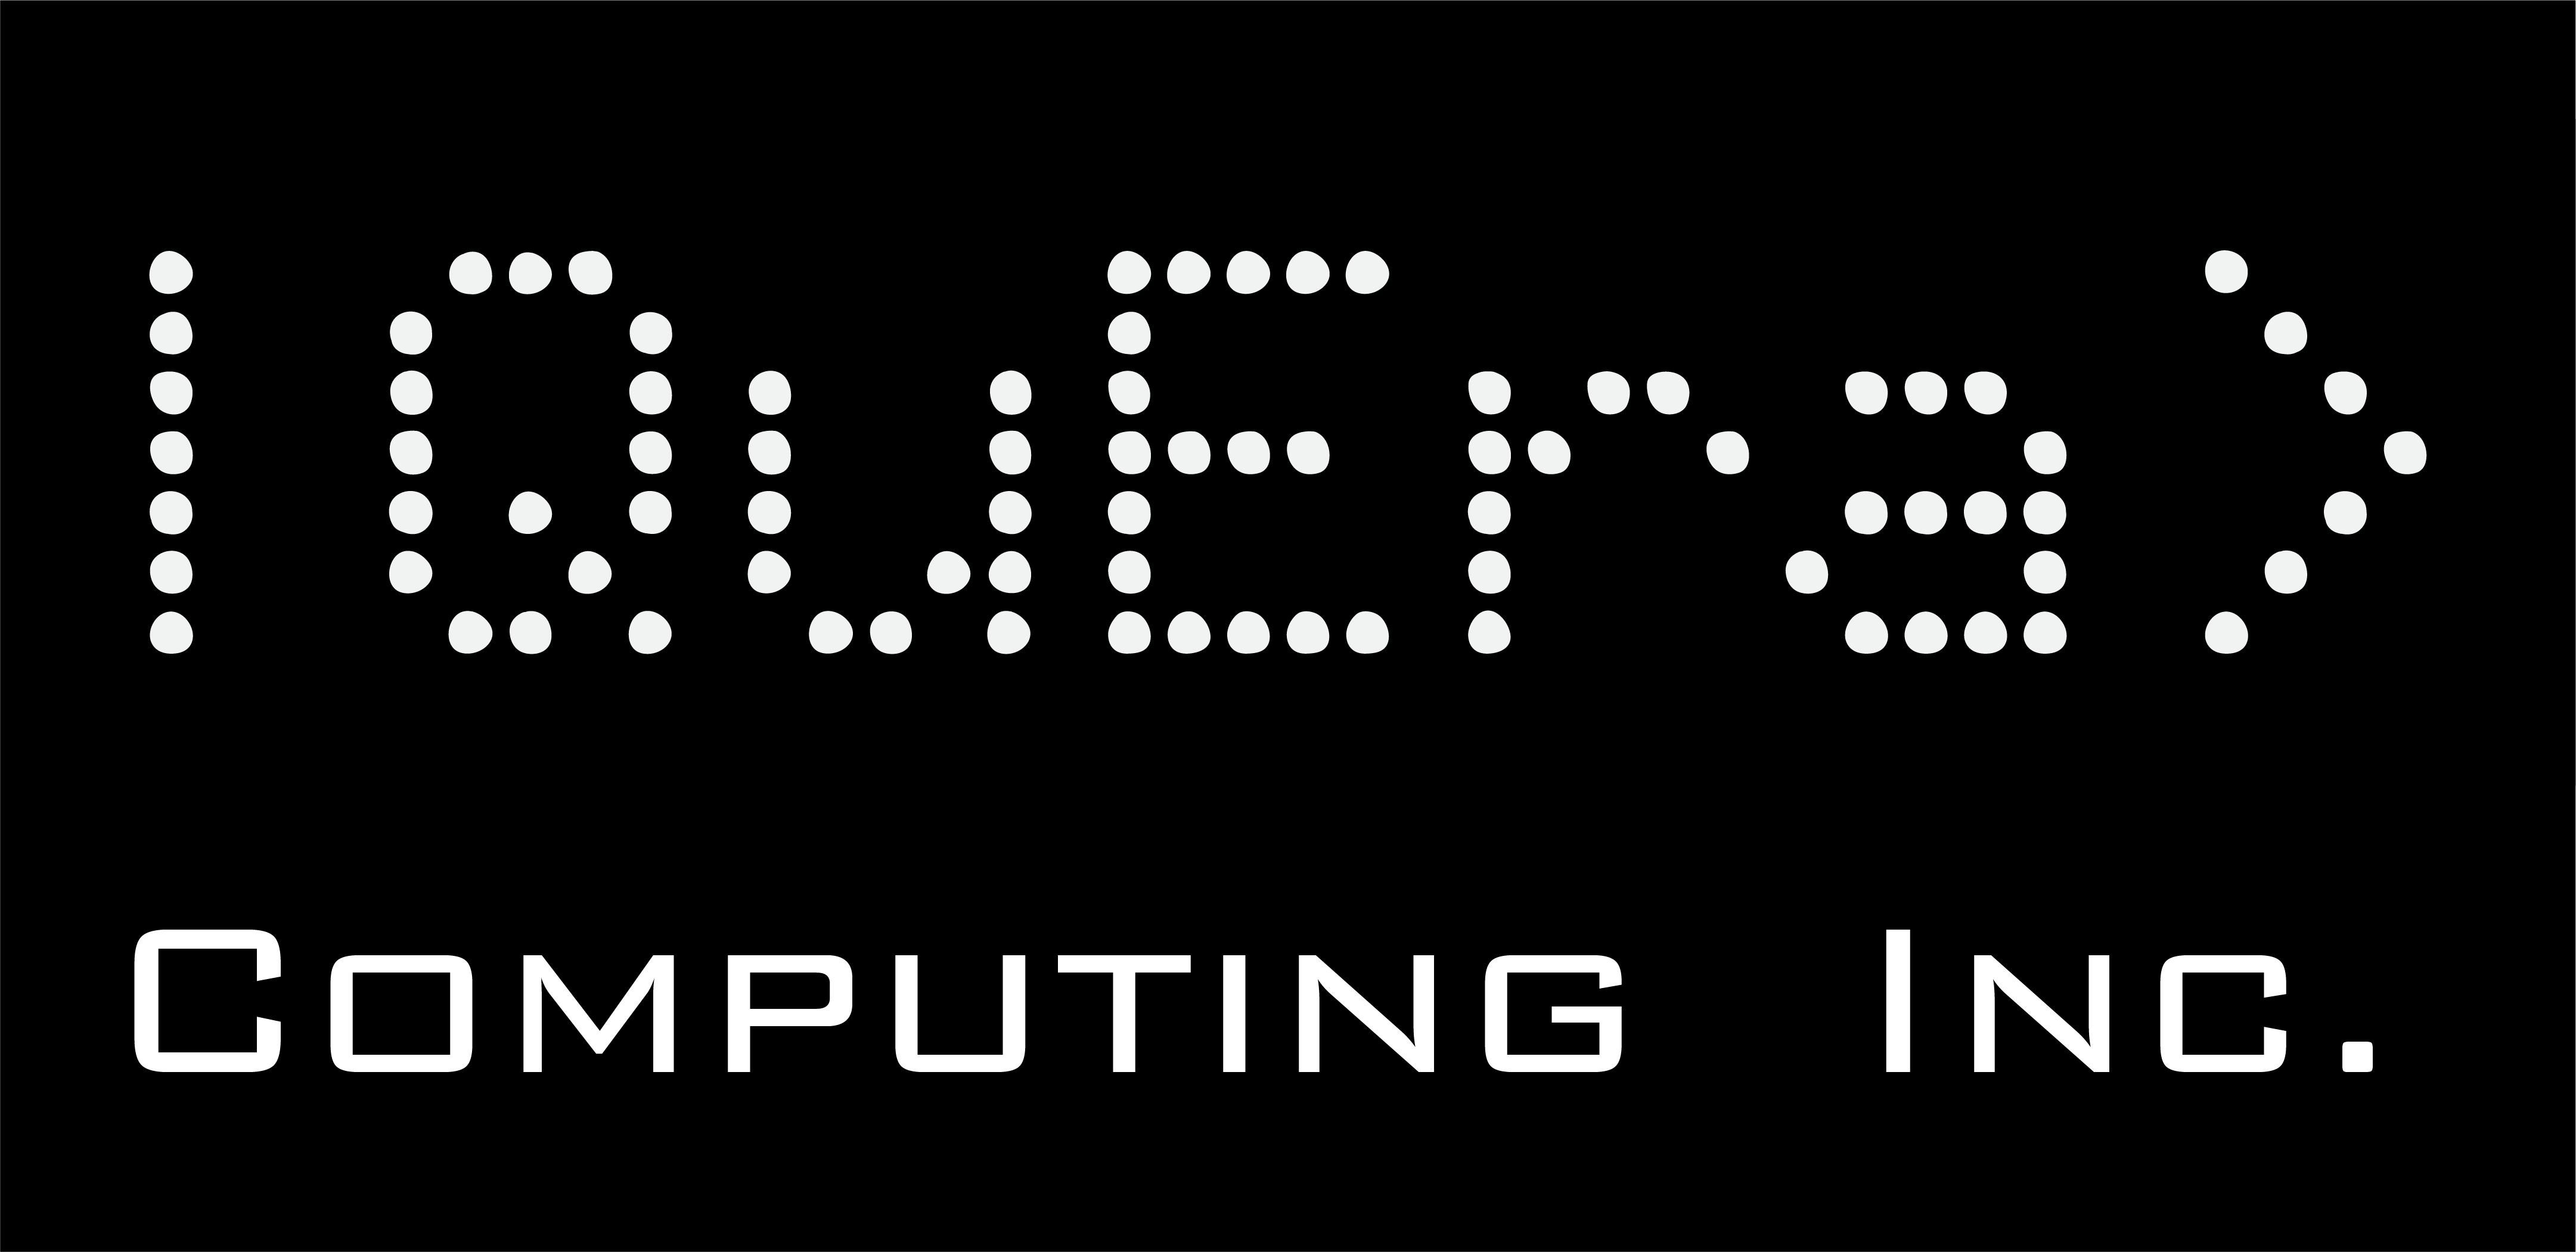 QuEra Computing از مخفی کاری با 17 میلیون دلار برای راه اندازی دستگاه کوانتومی بیرون آمد.